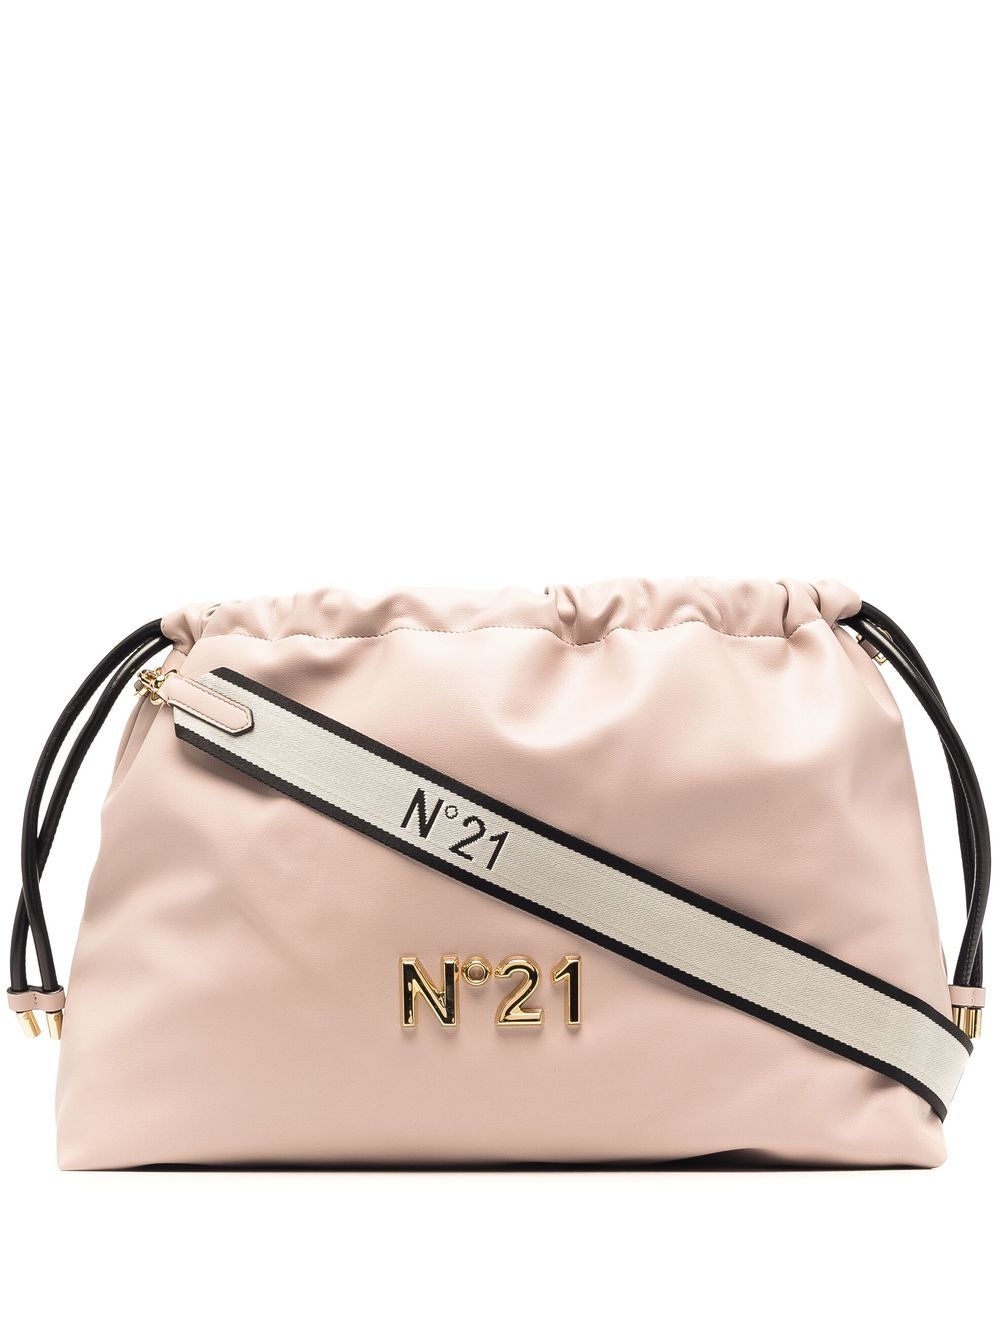 N°21 Nº21 Eva Crossbody Bag - White for Women